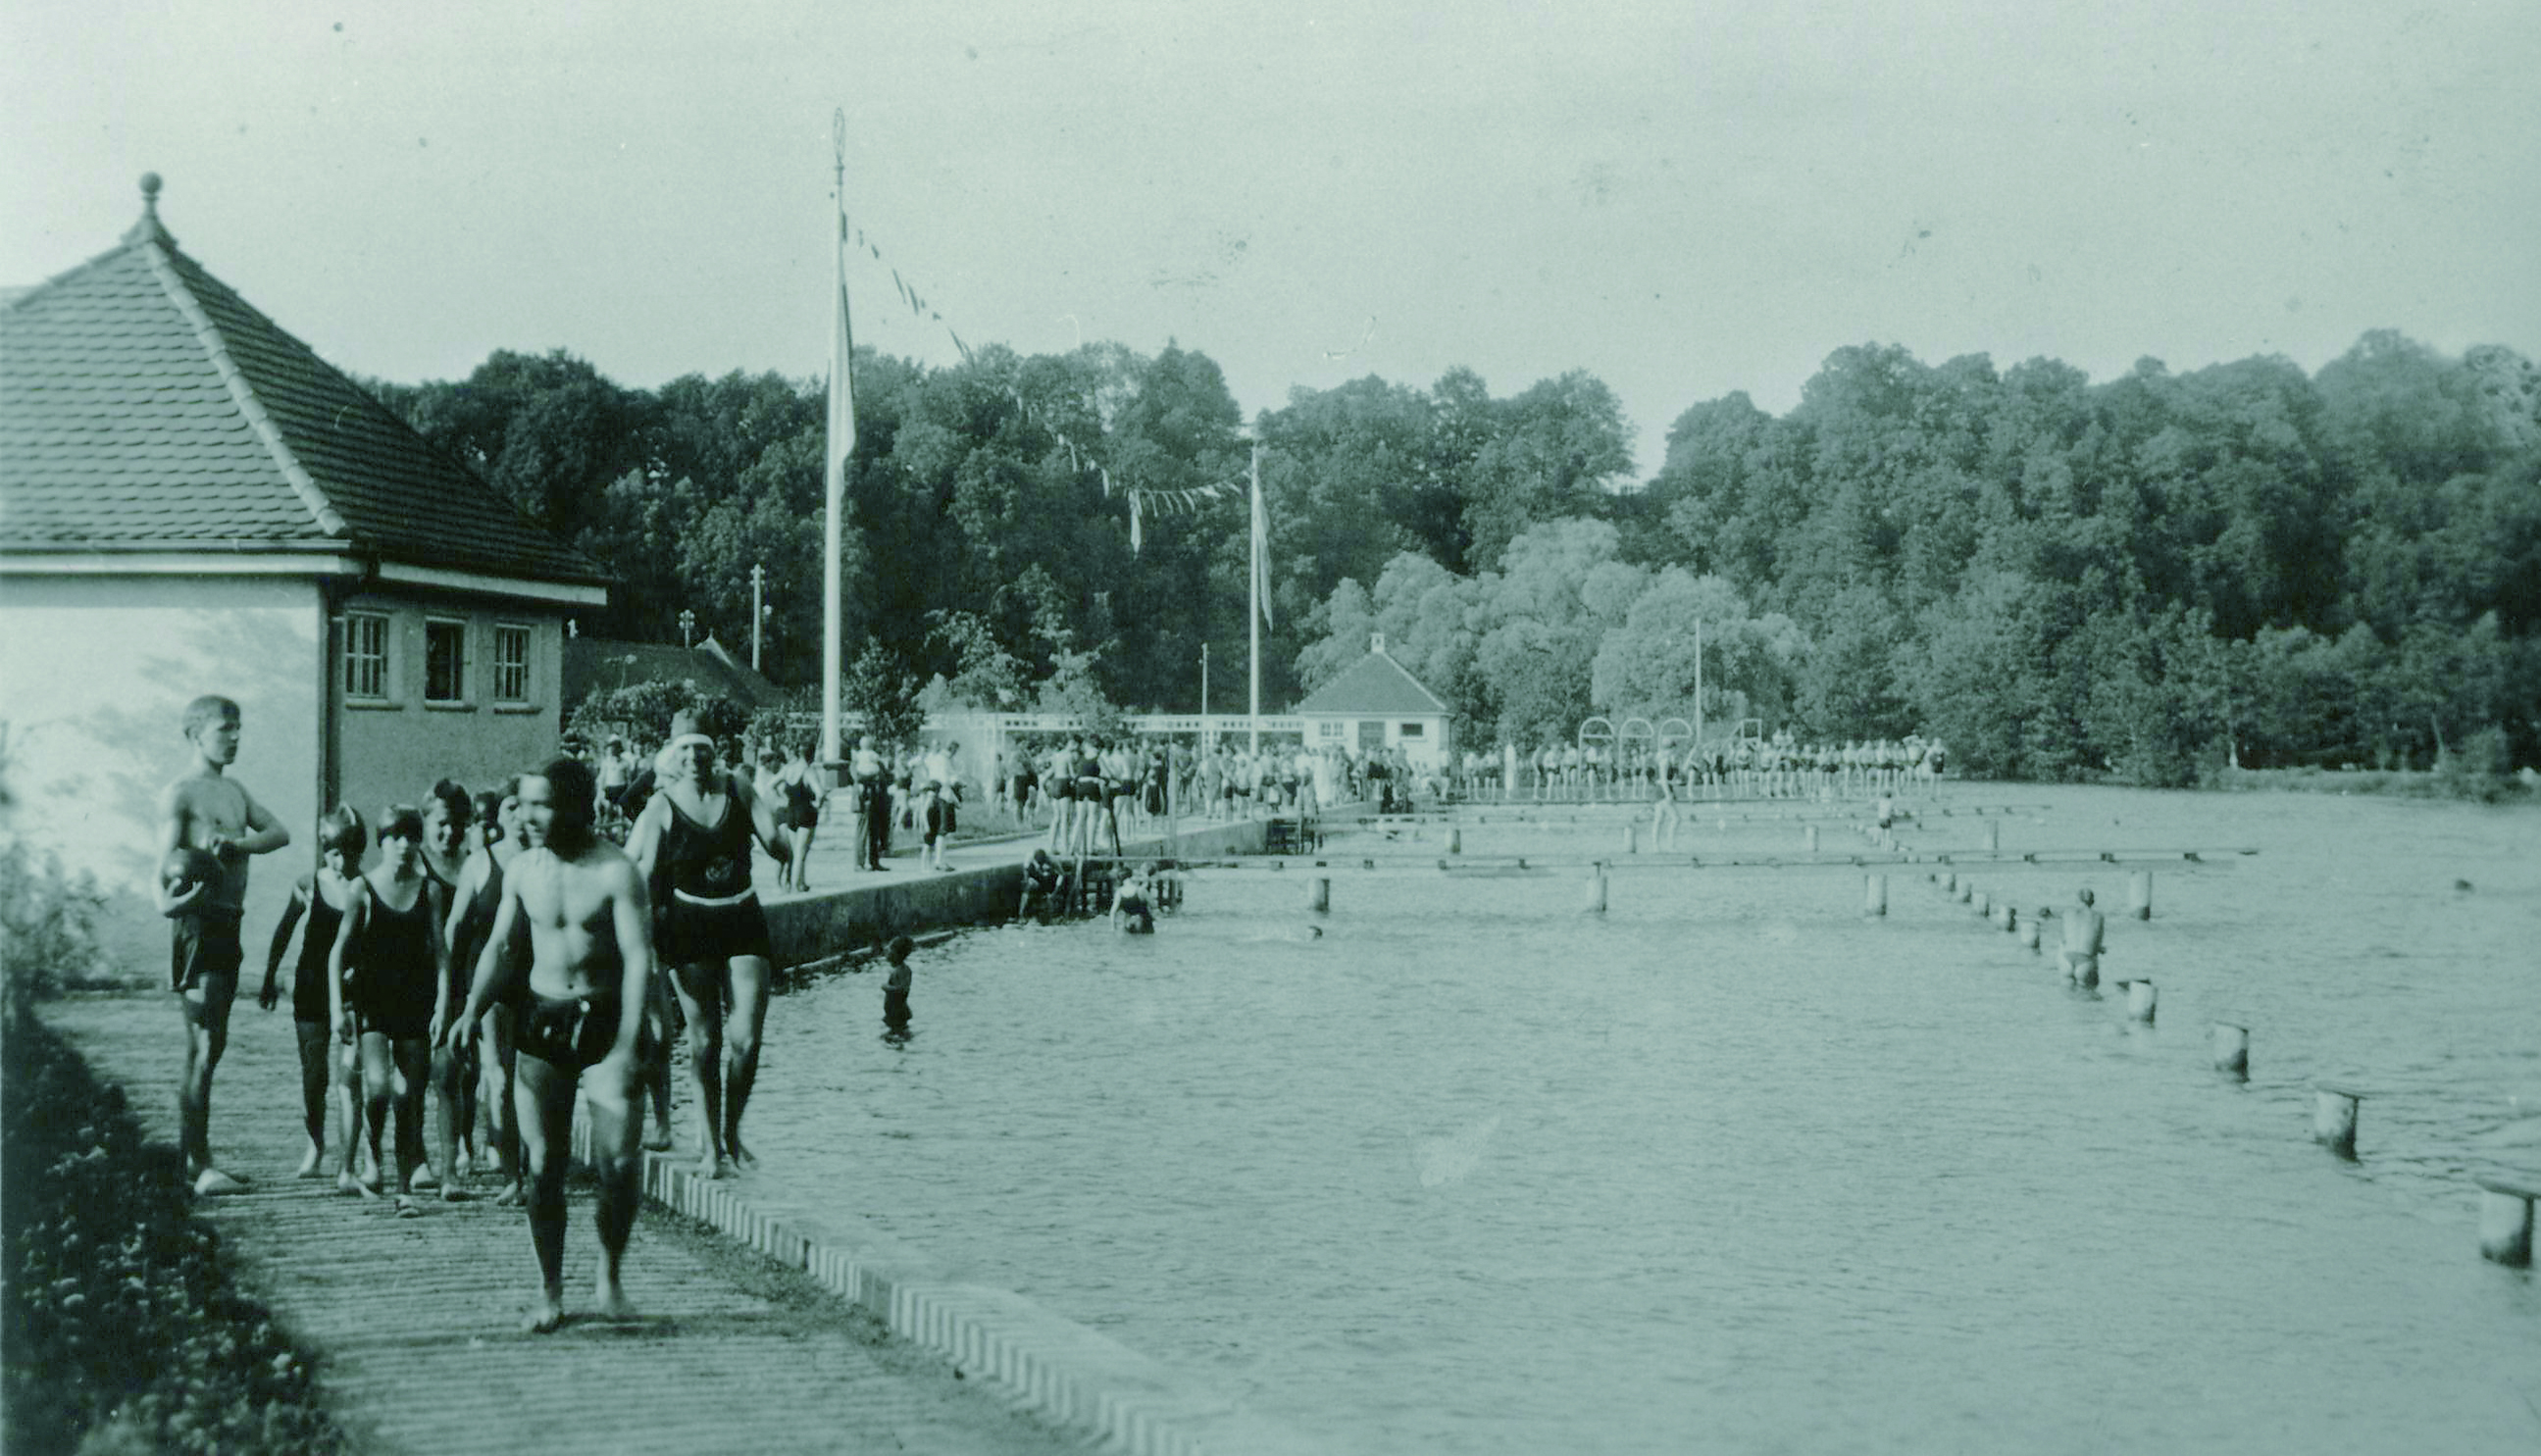 Schwimmbecken und Gebäude des Dachauer Freibads aus den 1930er Jahren, Personen in Badekleidung im Vordergrund